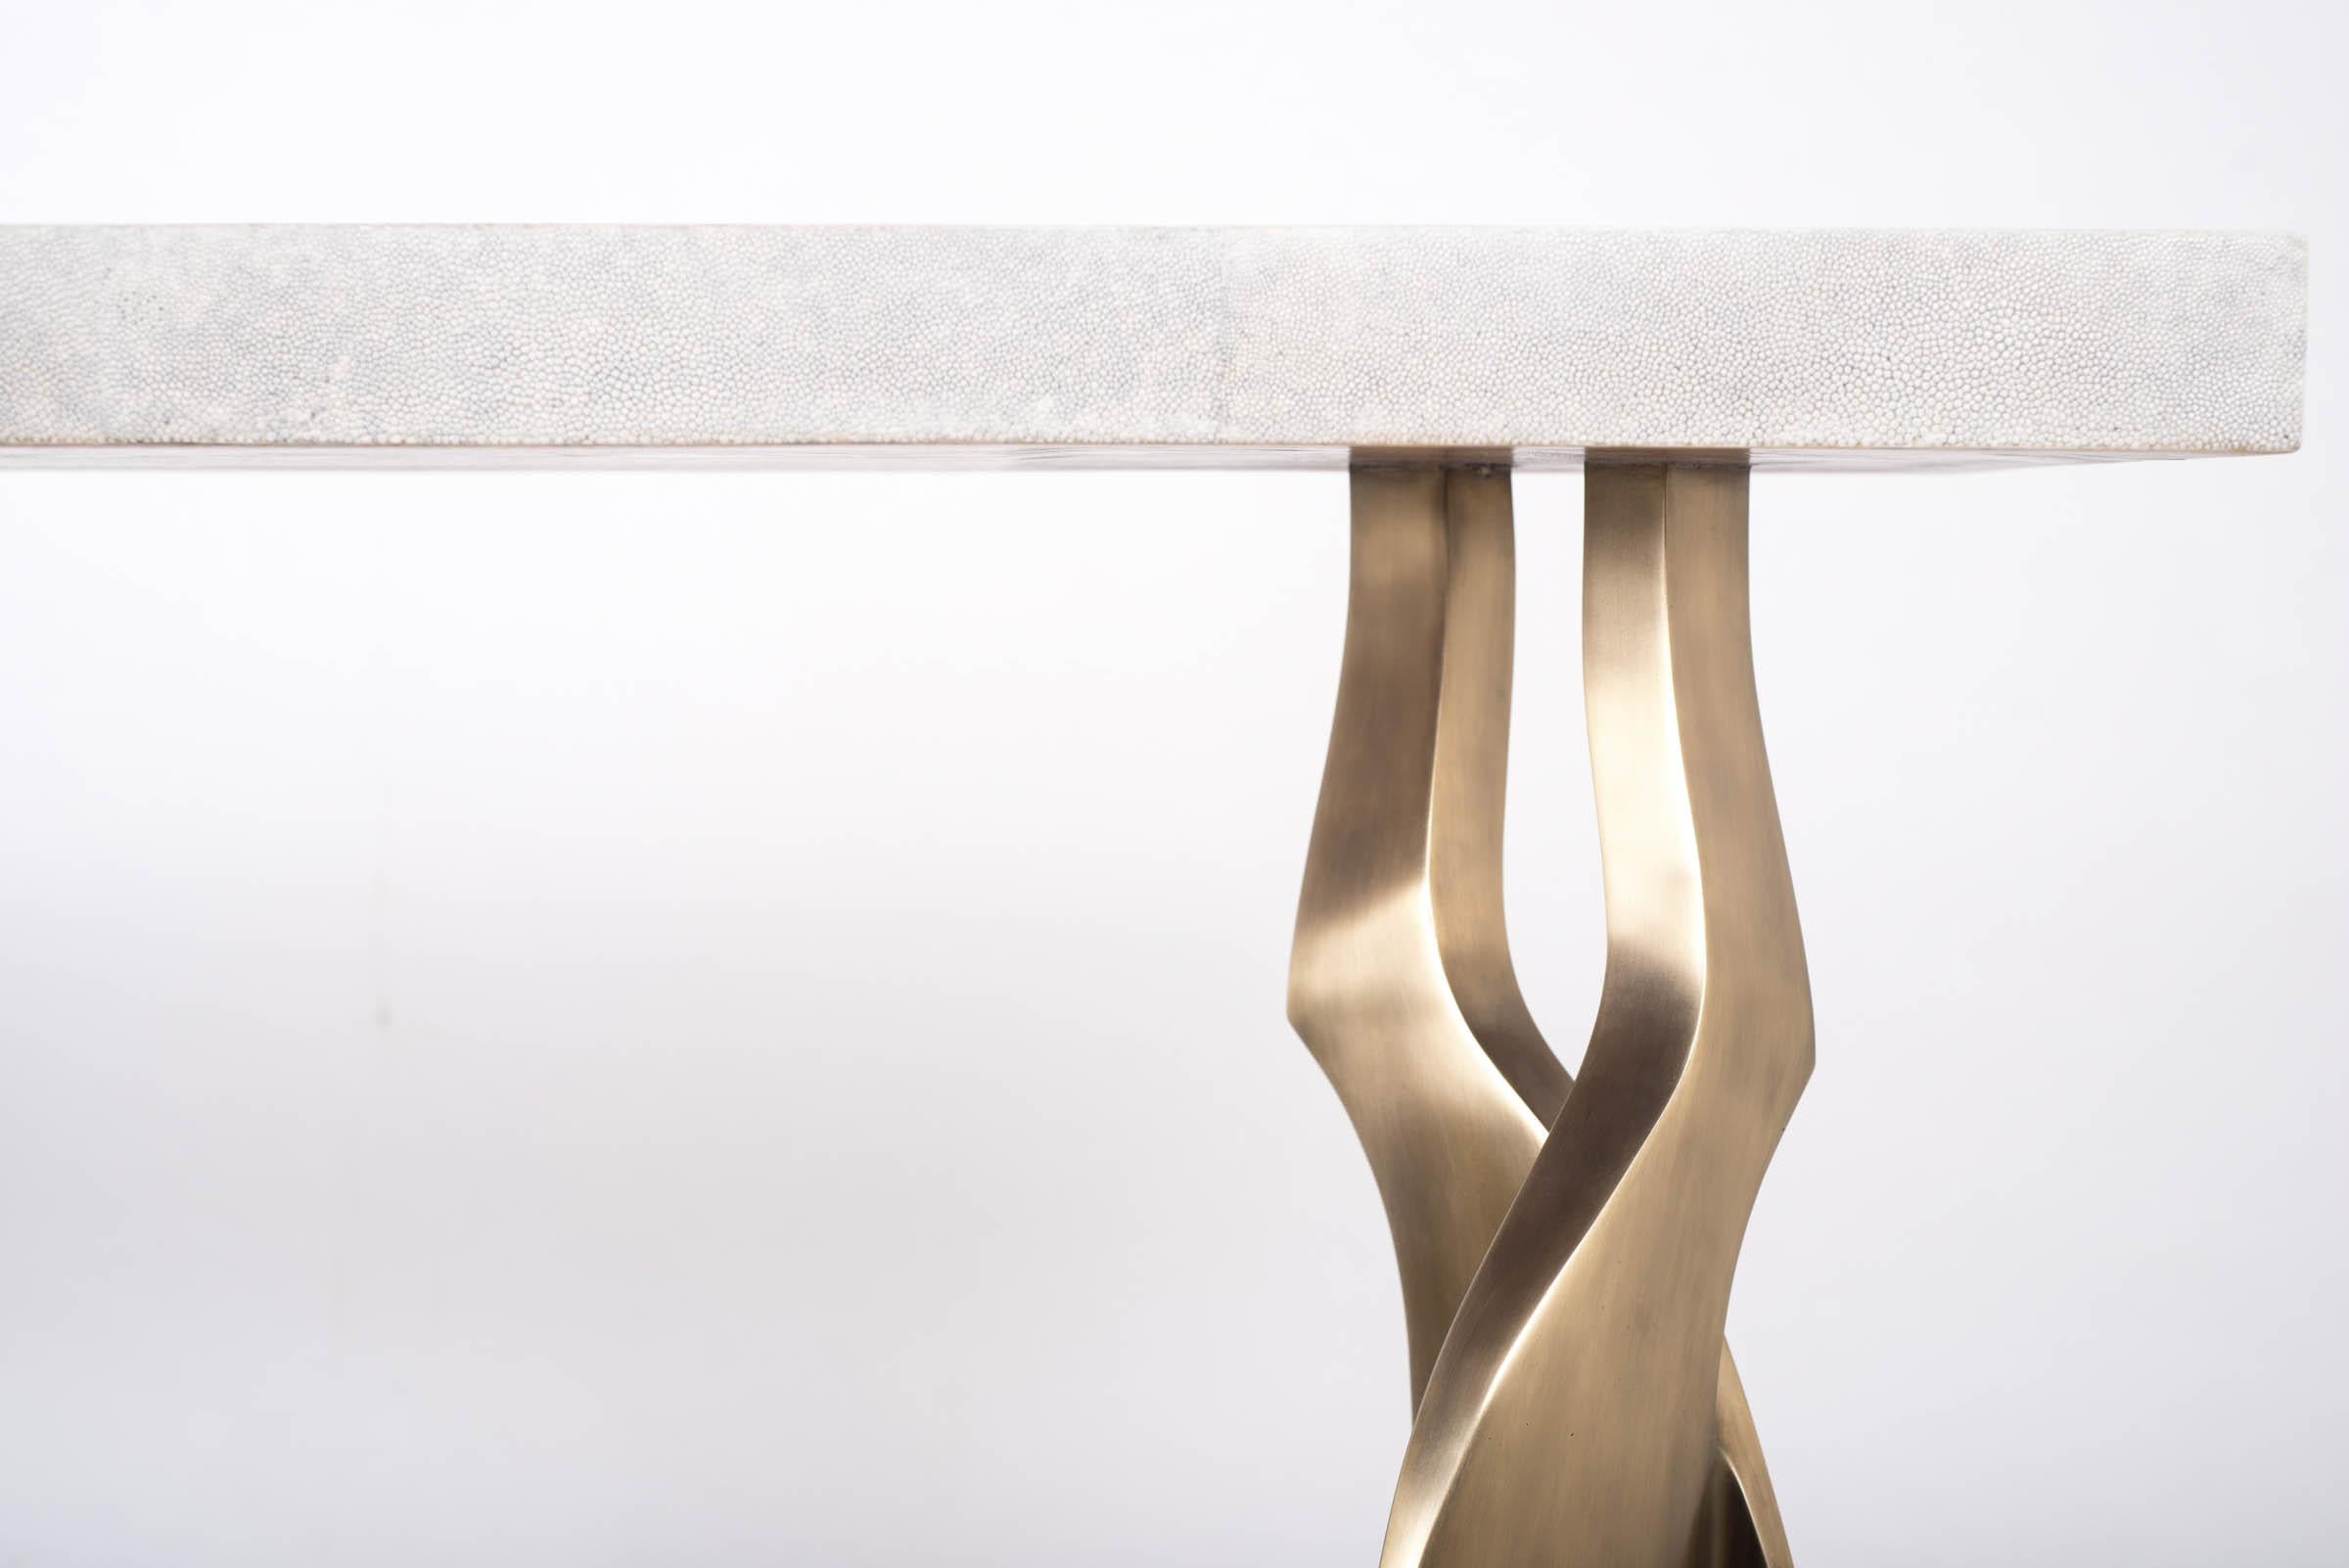 La table console Chital est à la fois spectaculaire et organique grâce à son design unique. Le plateau en marqueterie de galuchat crème repose sur une paire de pieds éthérés et sculpturaux en laiton bronze-patine. Cette pièce a été conçue par Kifu